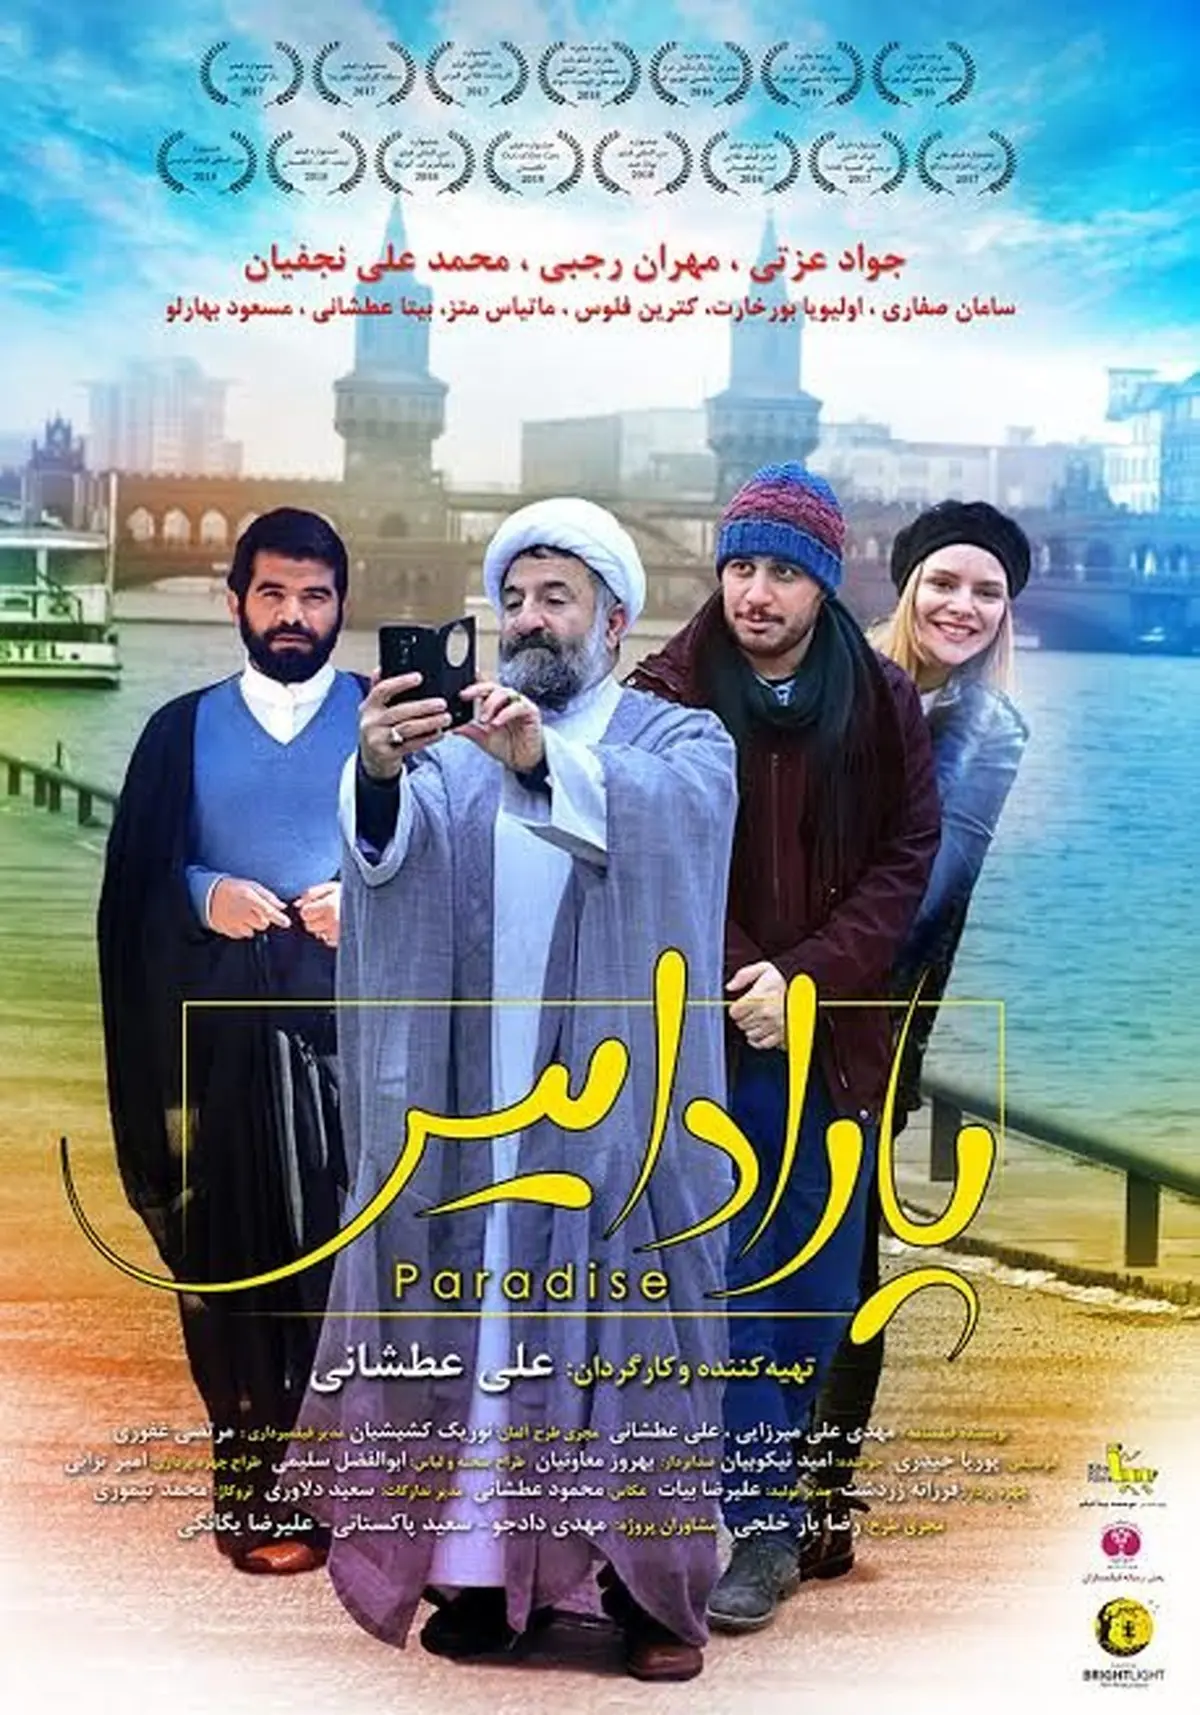 سلفی مهران رجبی در لباس روحانیت کنار بازیگر زن